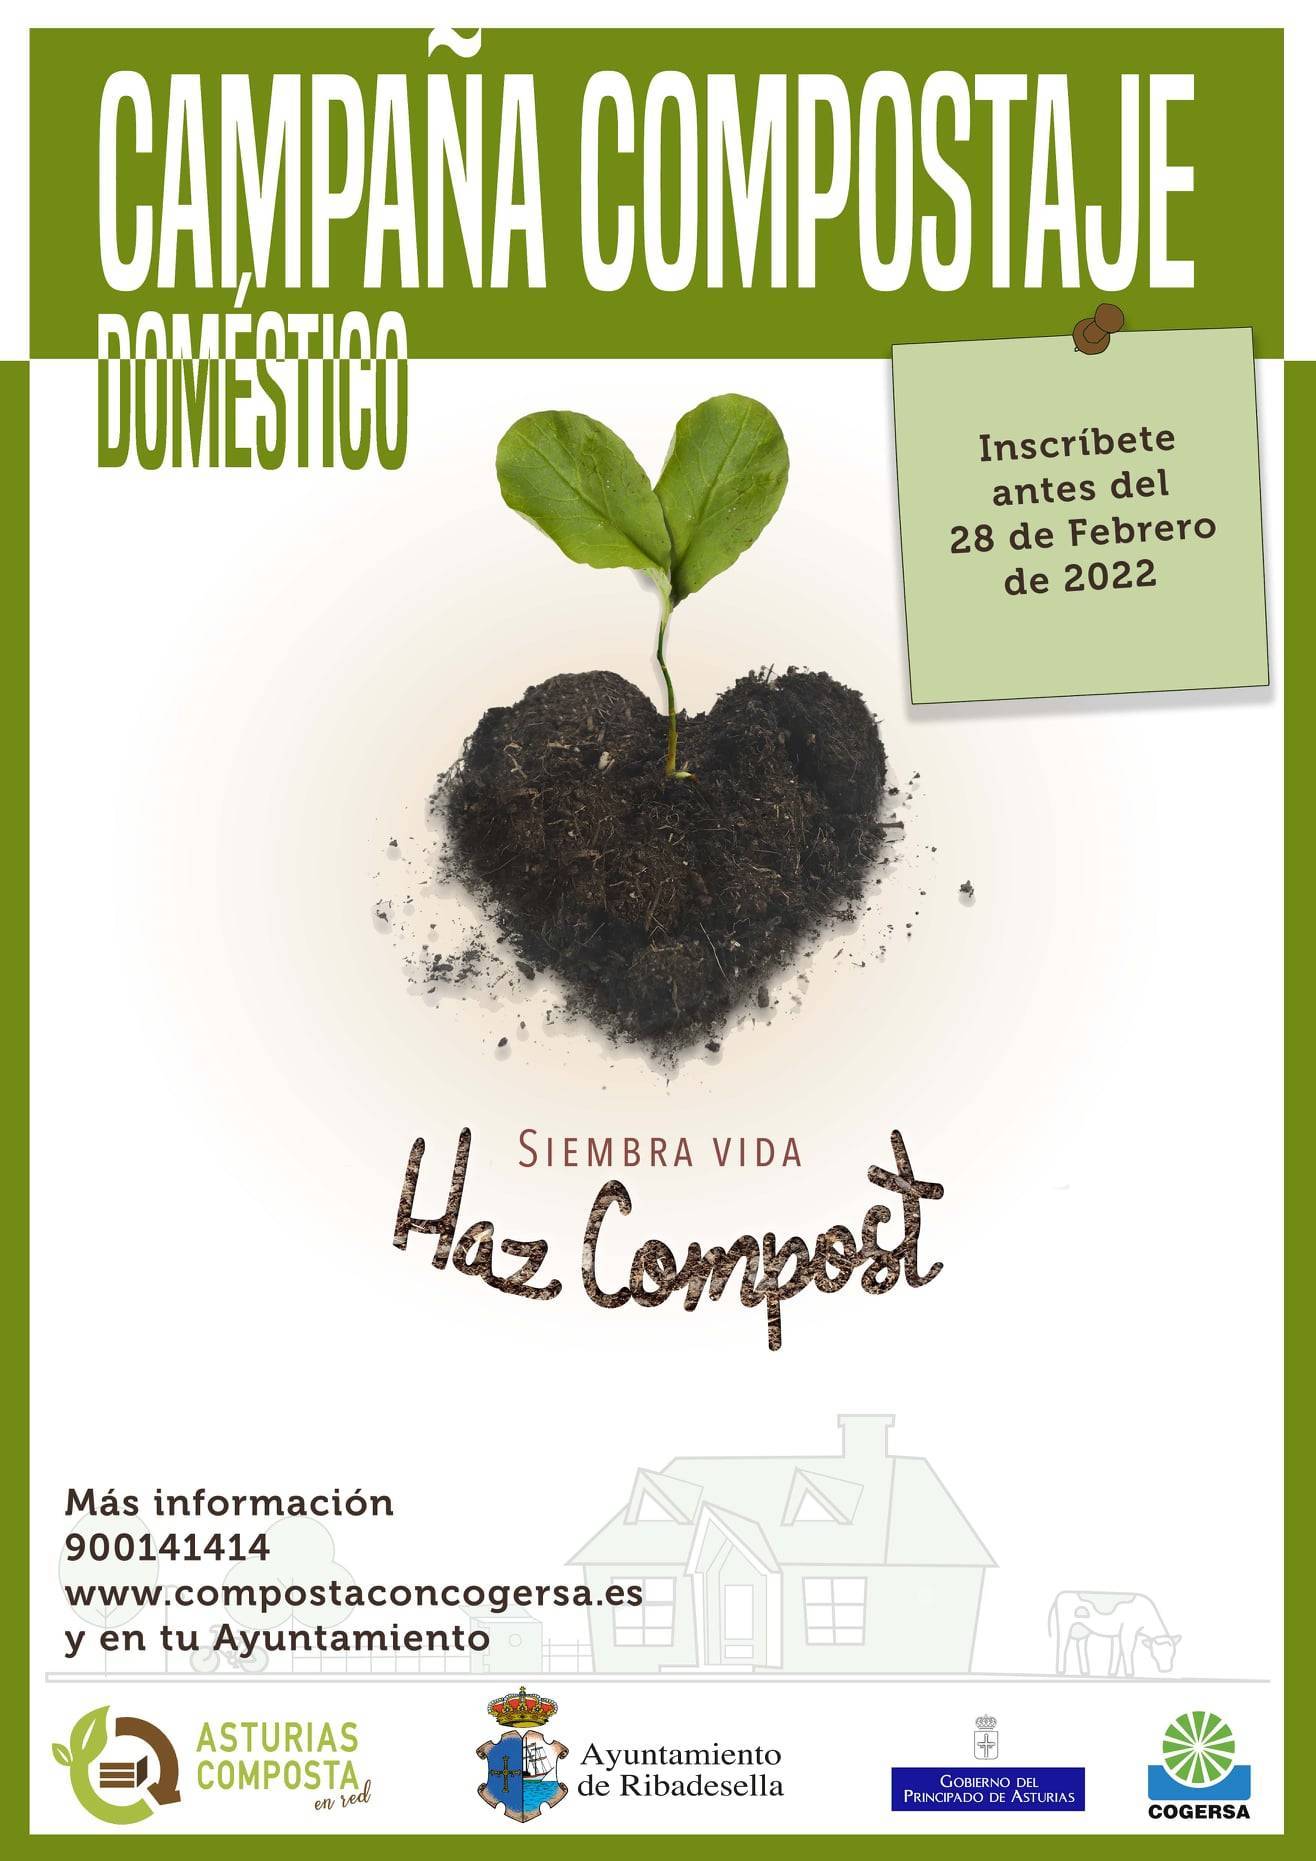 Campaña de compostaje doméstico (2022) - Ribadesella (Asturias)